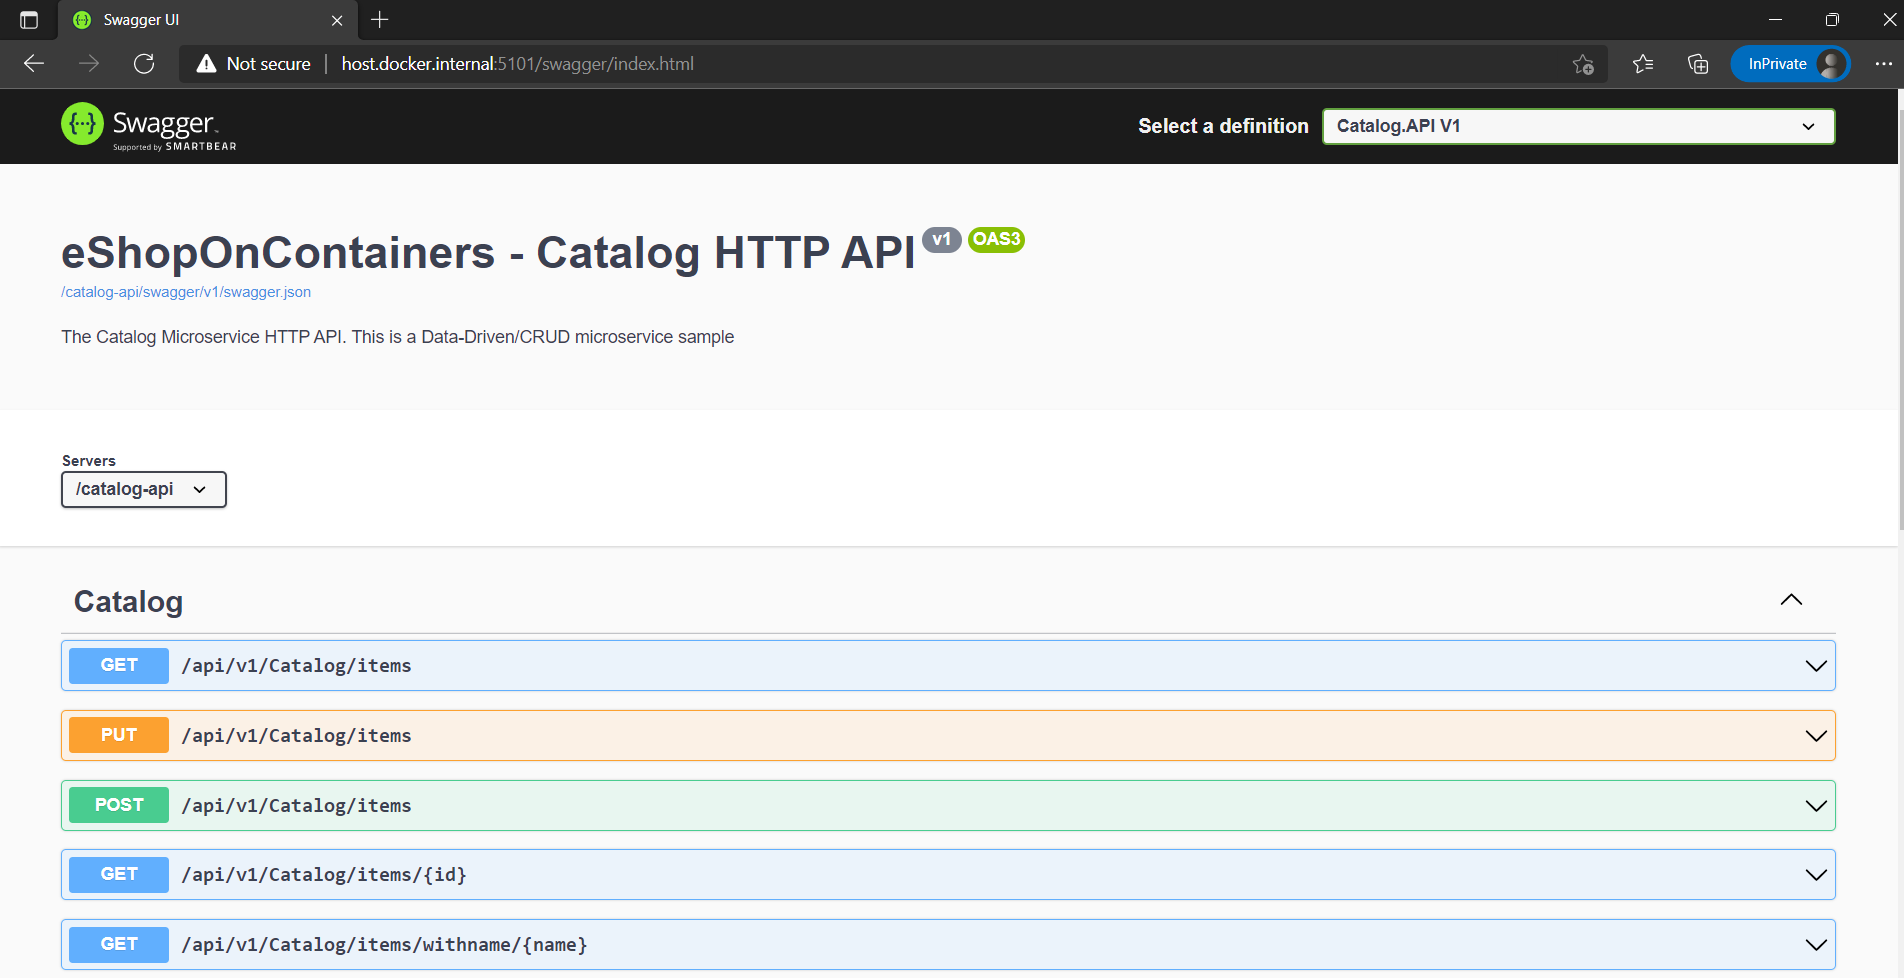 Capture d’écran de l’explorateur d’API Swagger montrant l’API eShopOContainers.